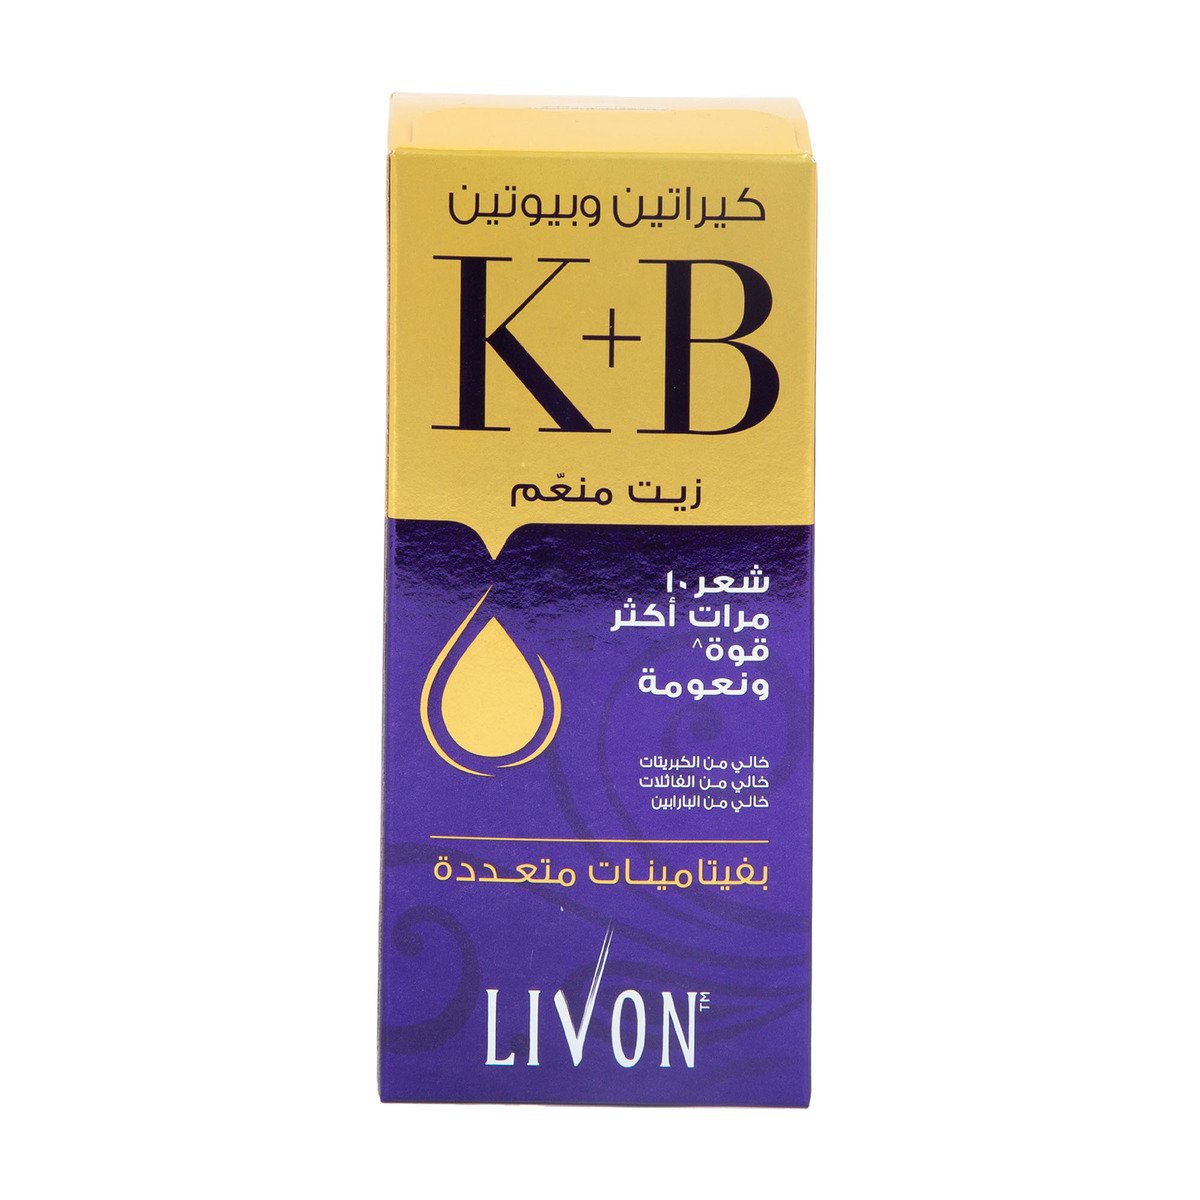 Livon Keratin & Biotin Smoothing Oil 100 ml